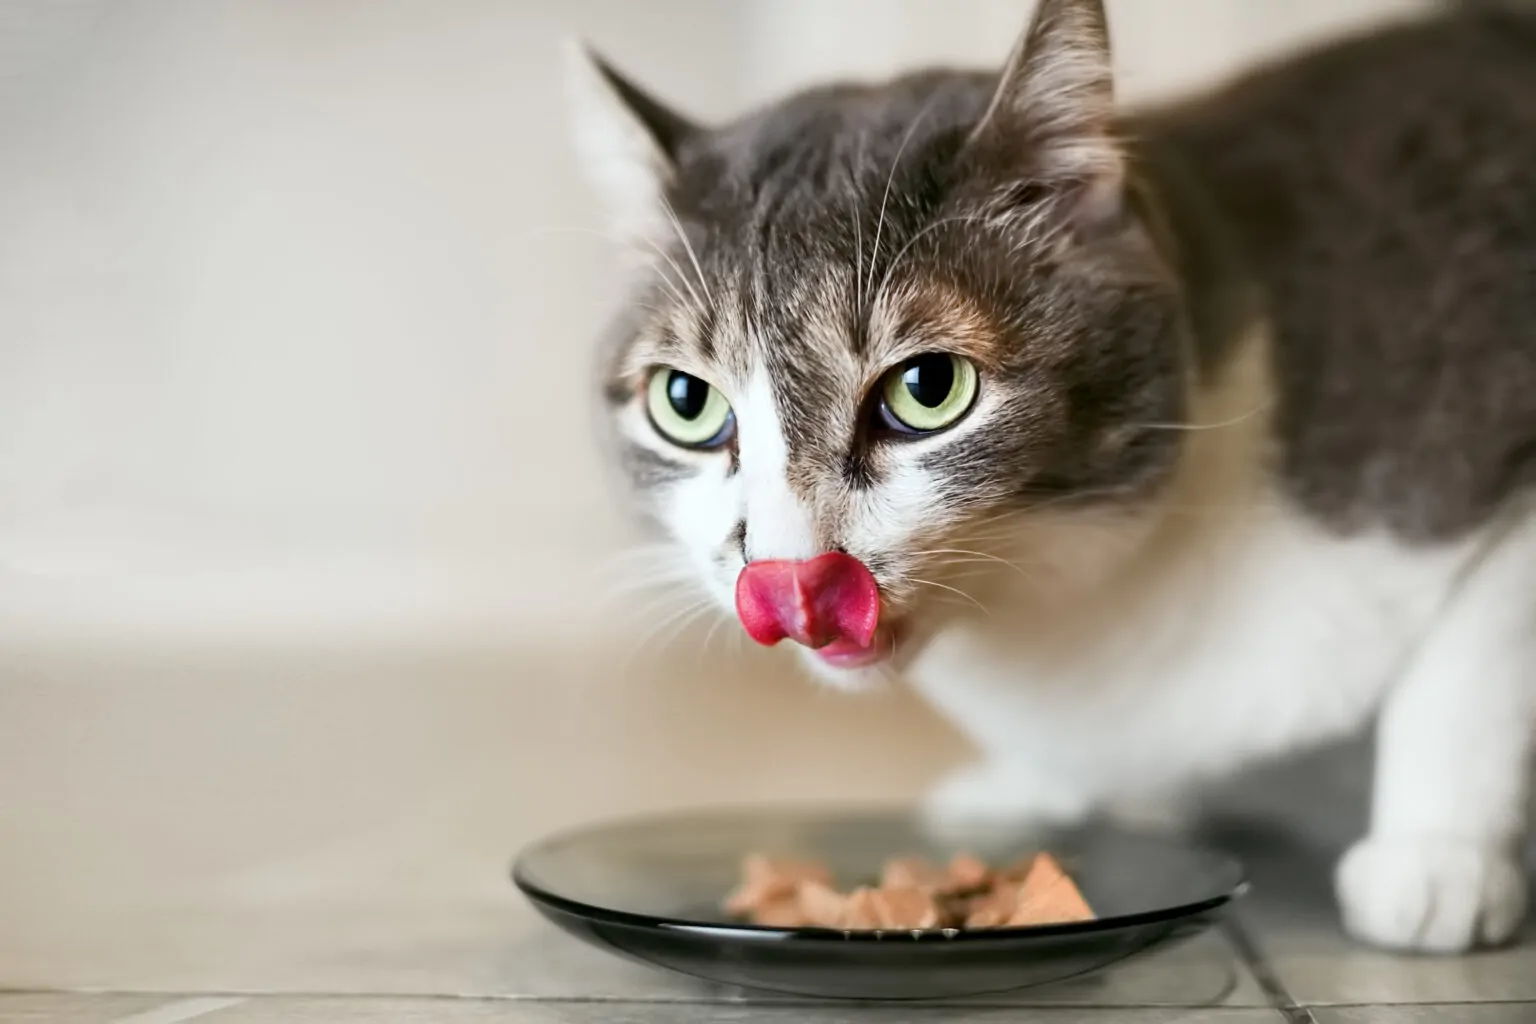 Tratamiento de la gingivitis en gatos con solución salina